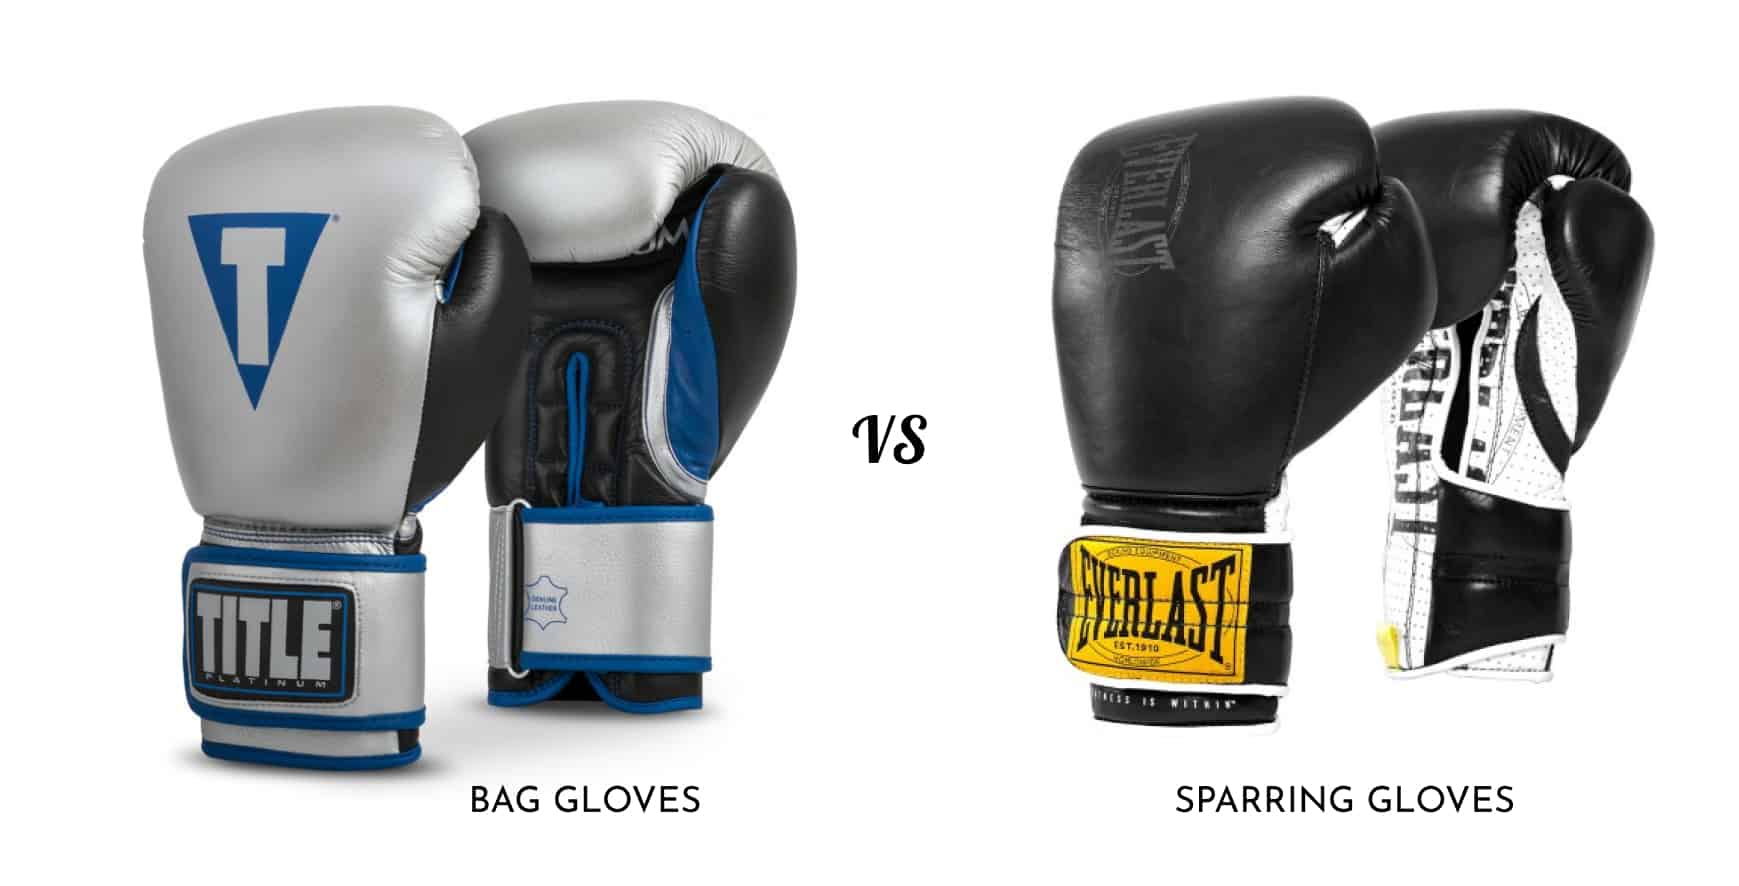 8 oz gloves for heavy bag